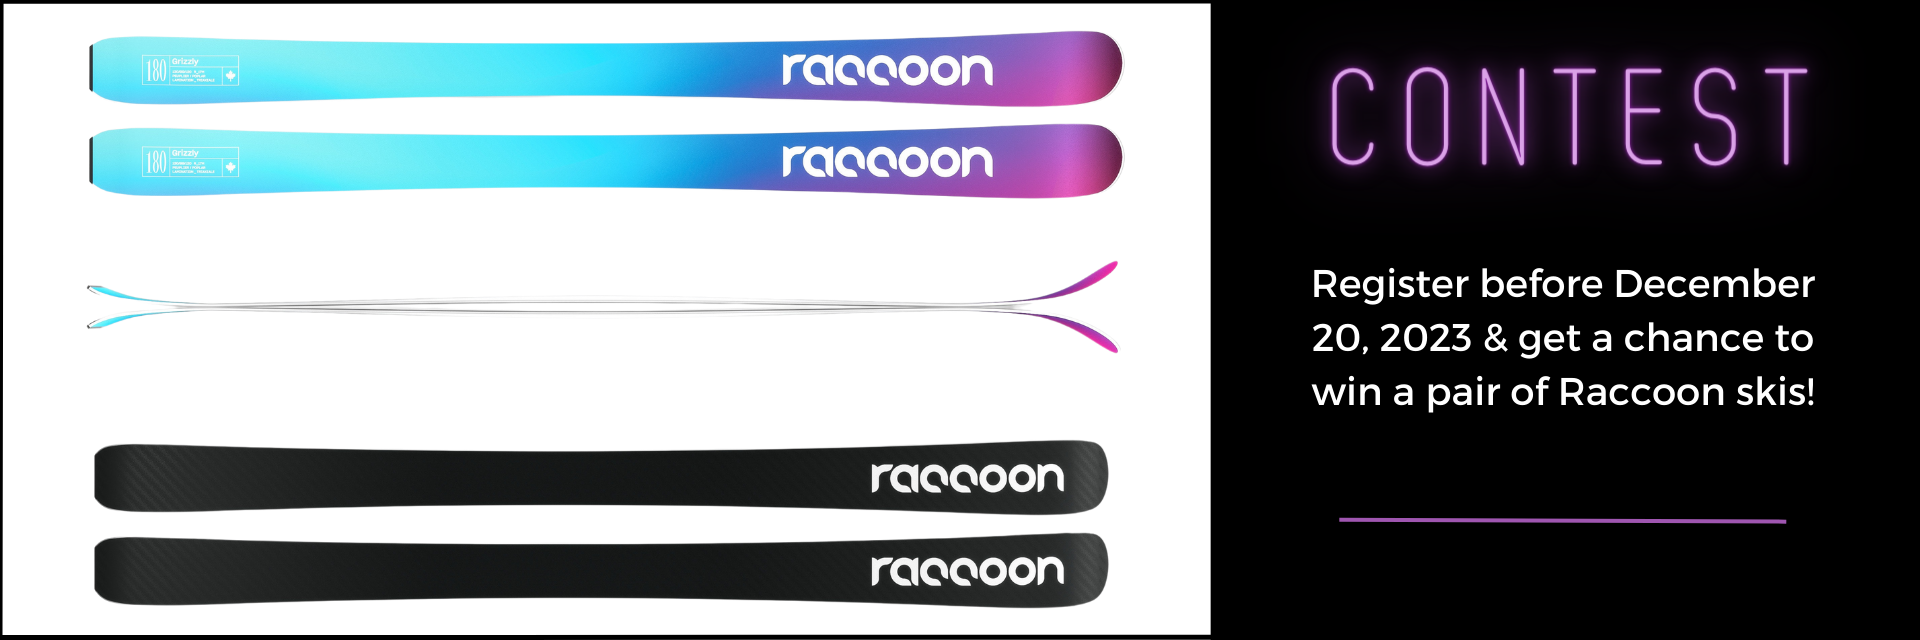 Concours Raccoon 2023-Skis en.png